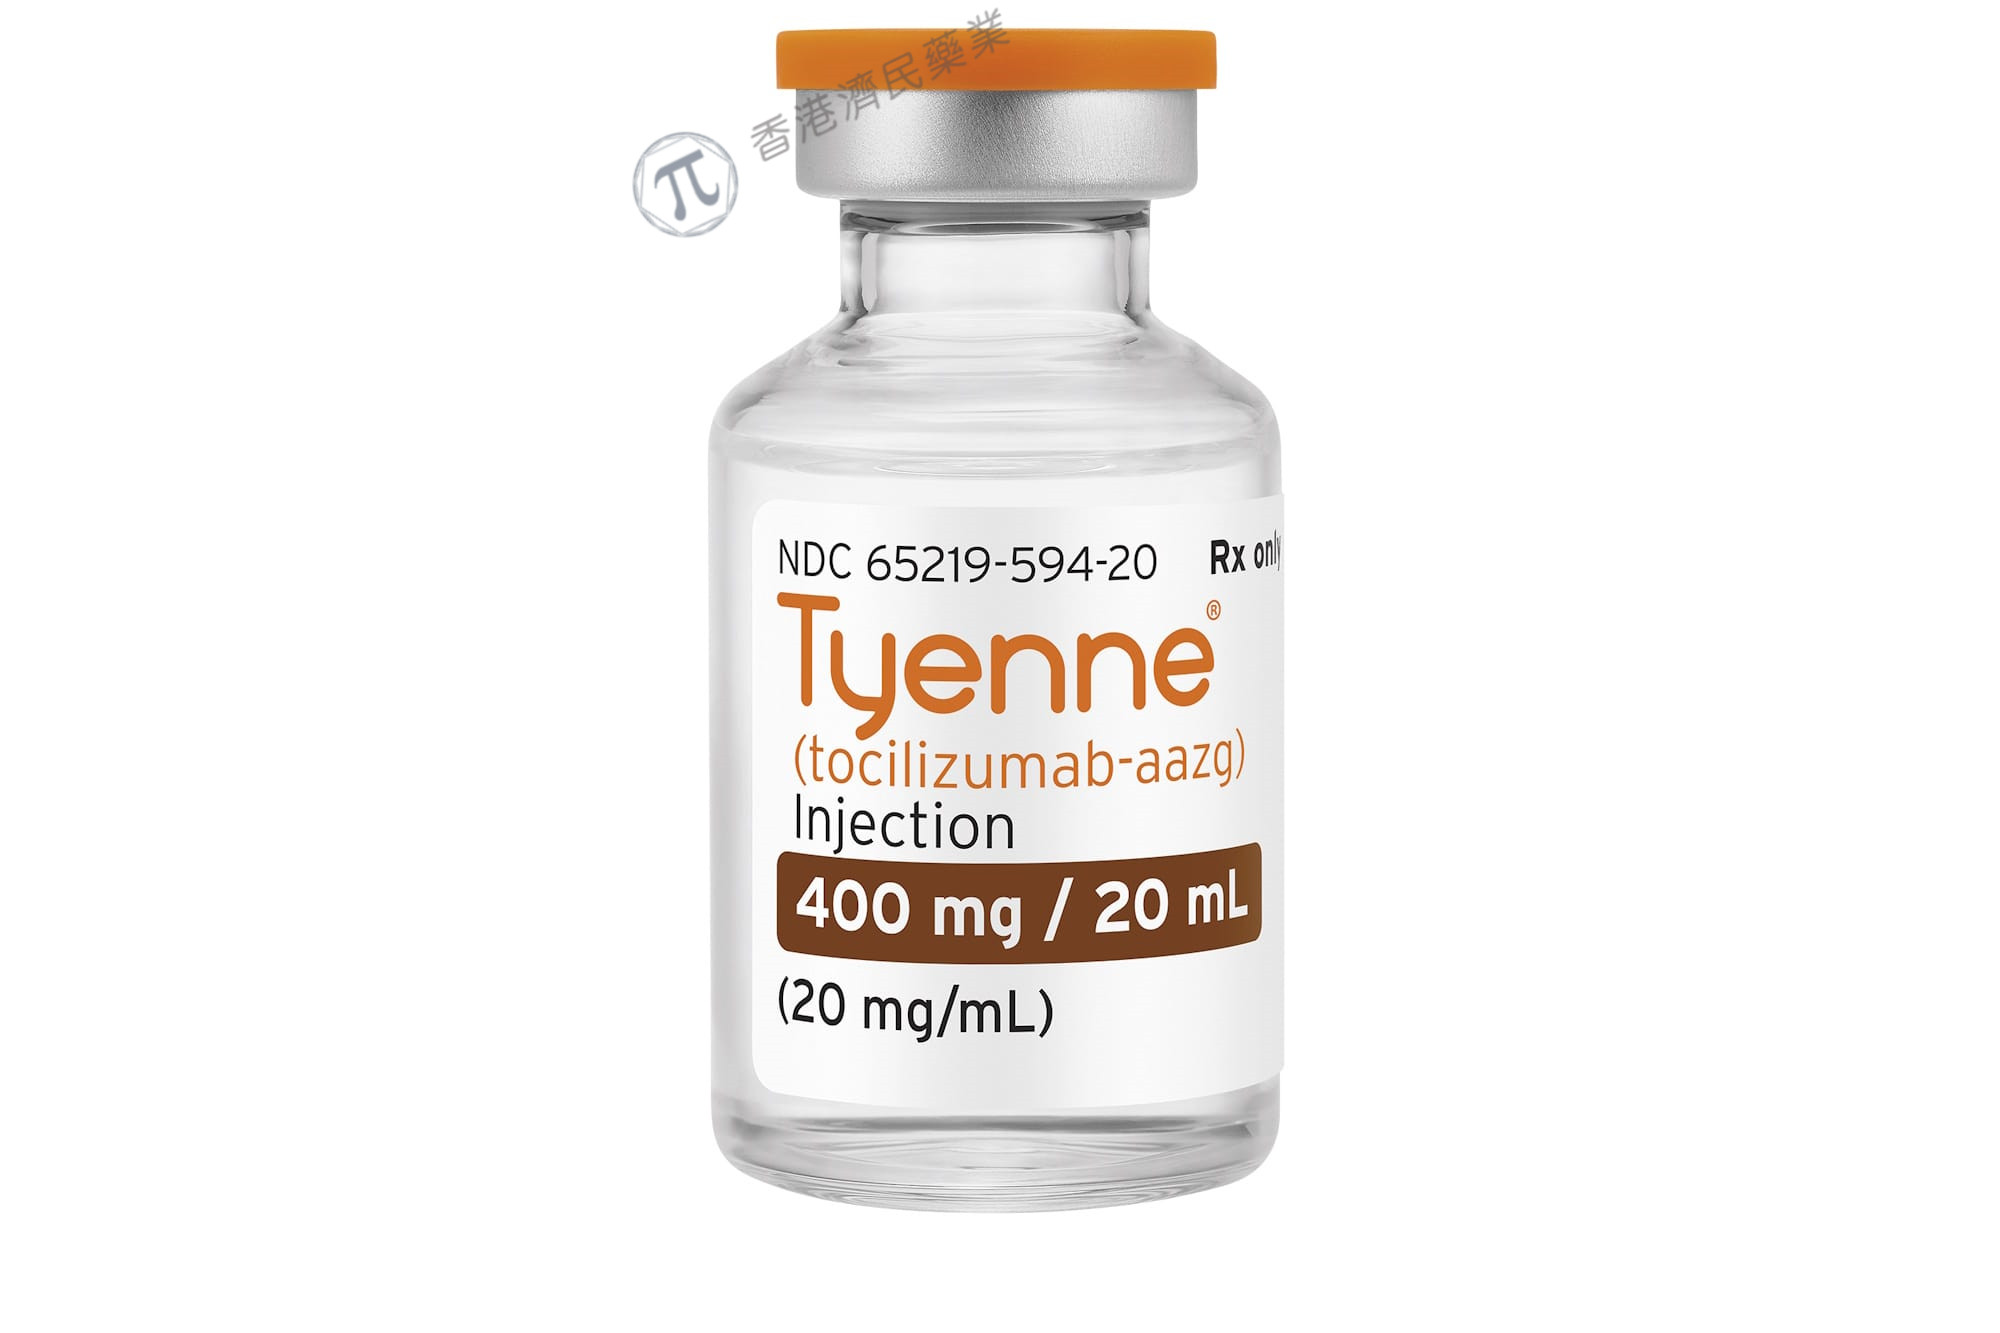 生物仿制药Tyenne的静脉制剂现已在美上市